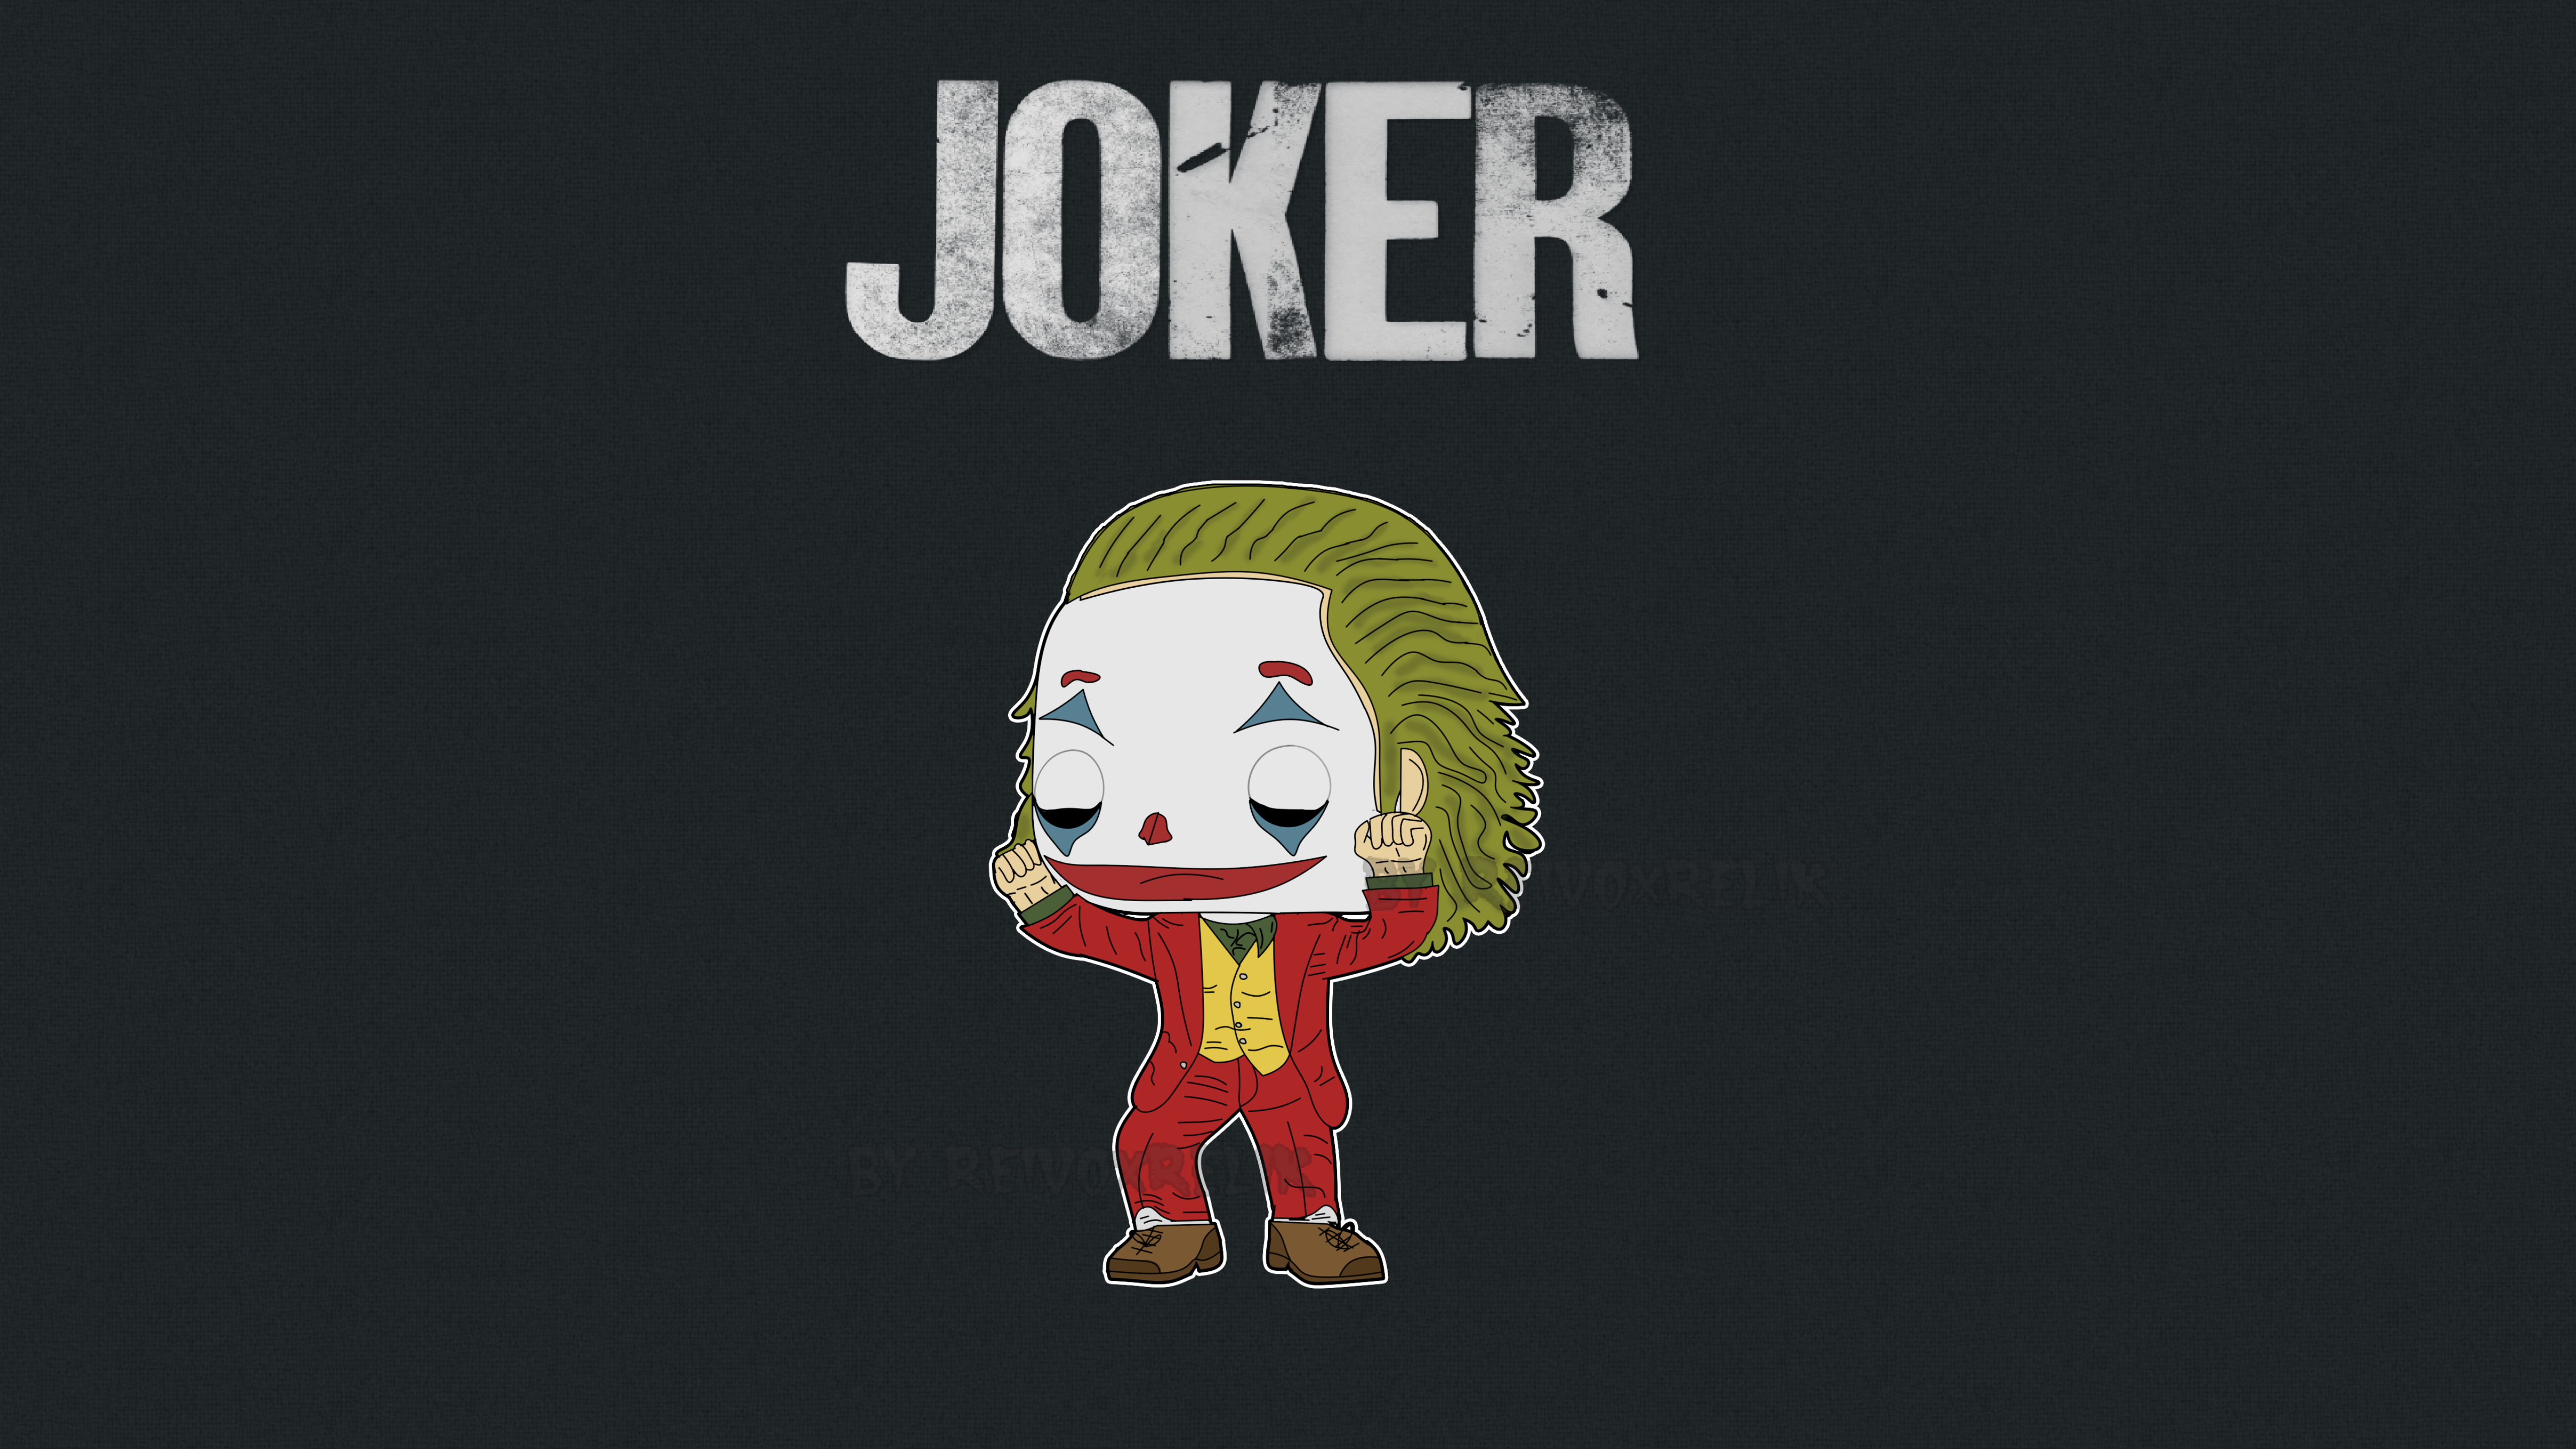 Little Joker Minimalist - Joker 2019 Funko Pop - HD Wallpaper 